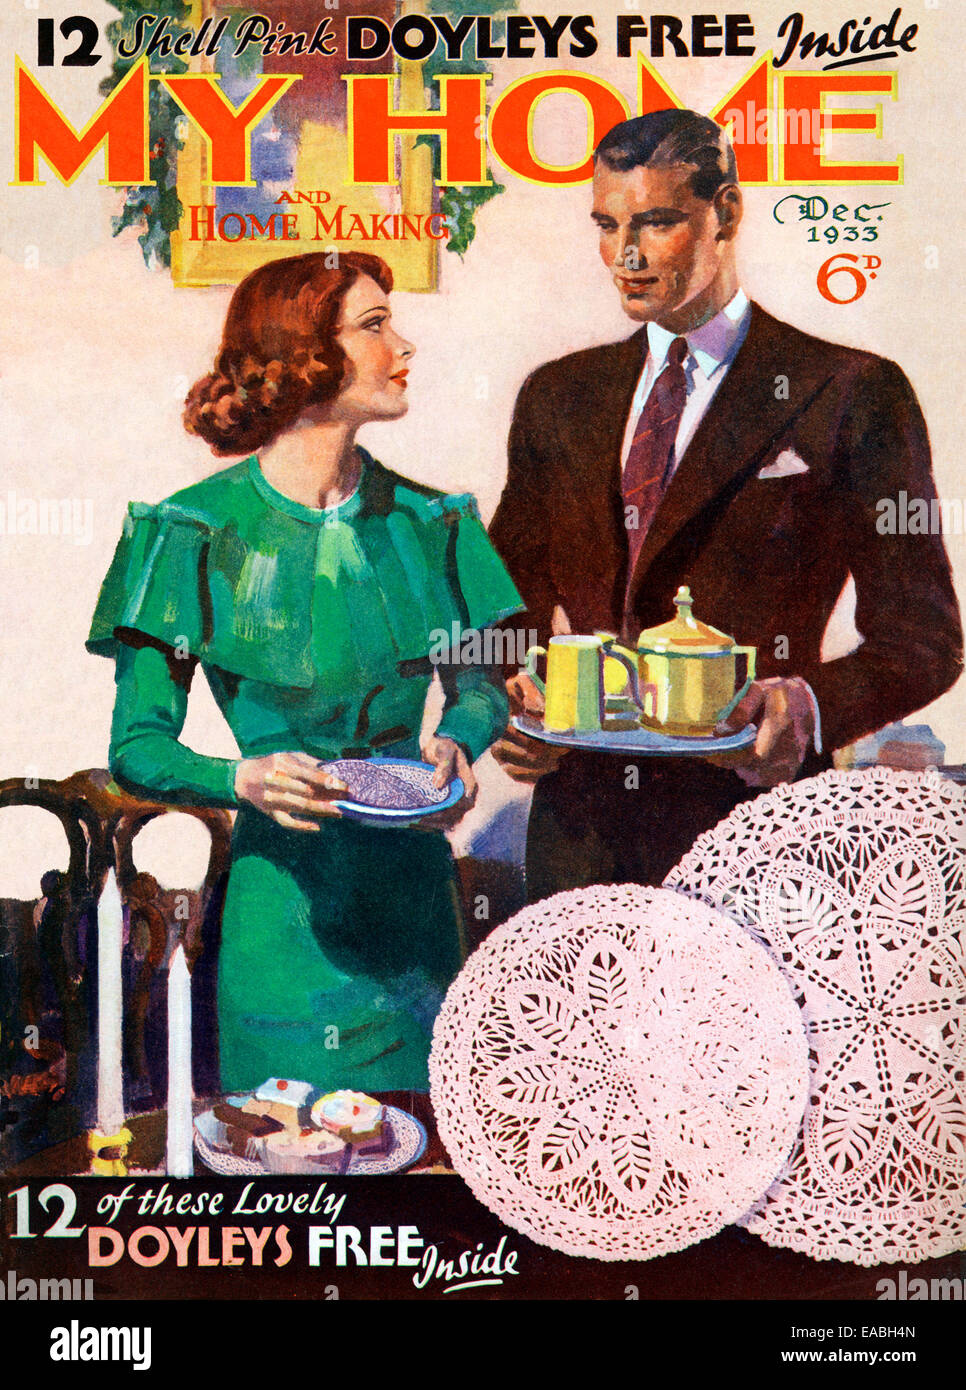 Ma maison, l'heure du thé, 1933 Couverture du magazine anglais accueil et le style de la nouvelle classe moyenne de banlieue, l'heure du thé à la maison, et une offre doyley Banque D'Images